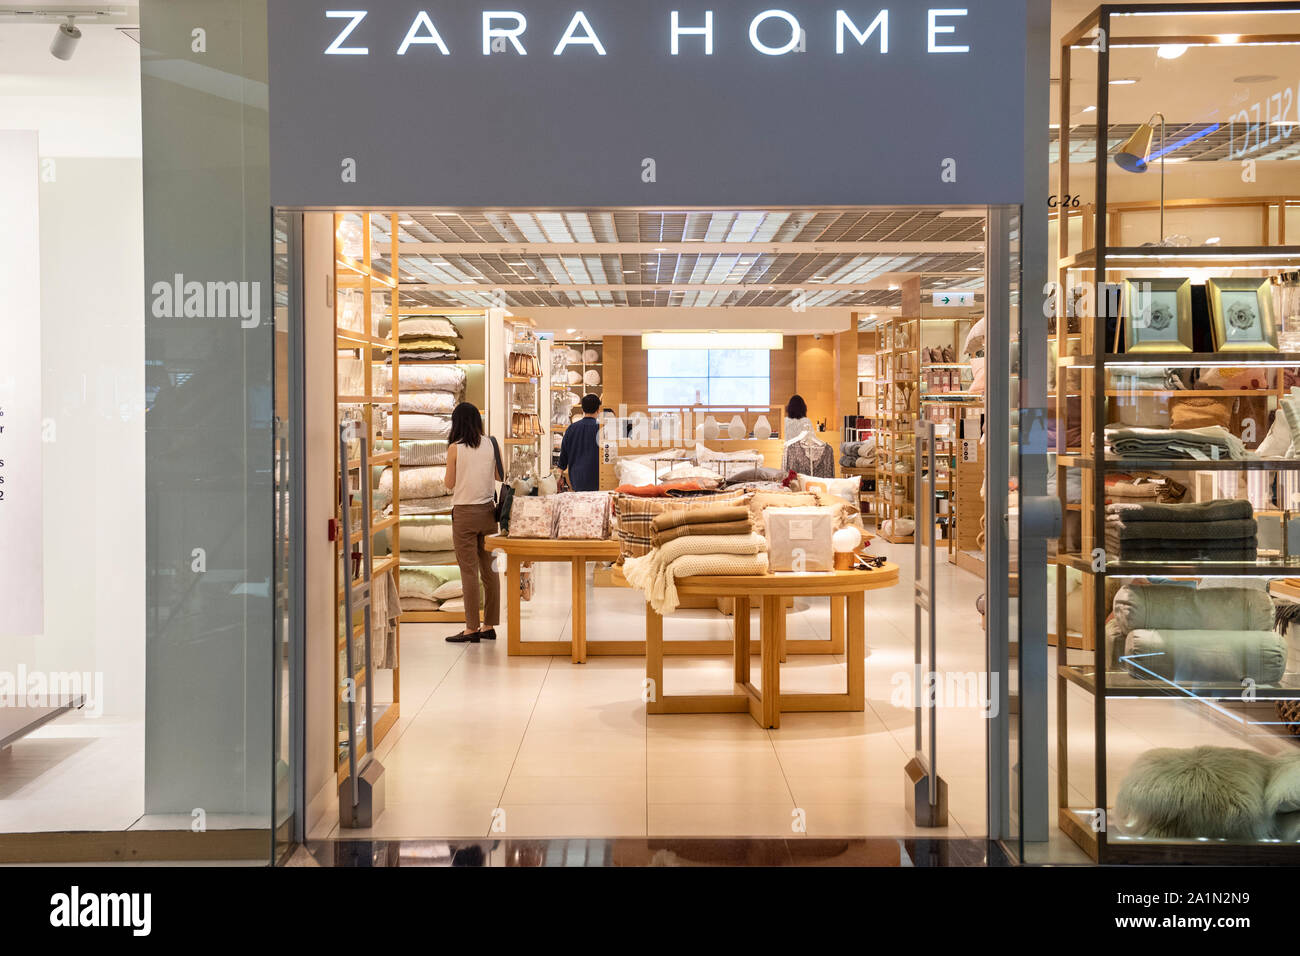 Zara home store Banque de photographies et d'images à haute résolution -  Alamy